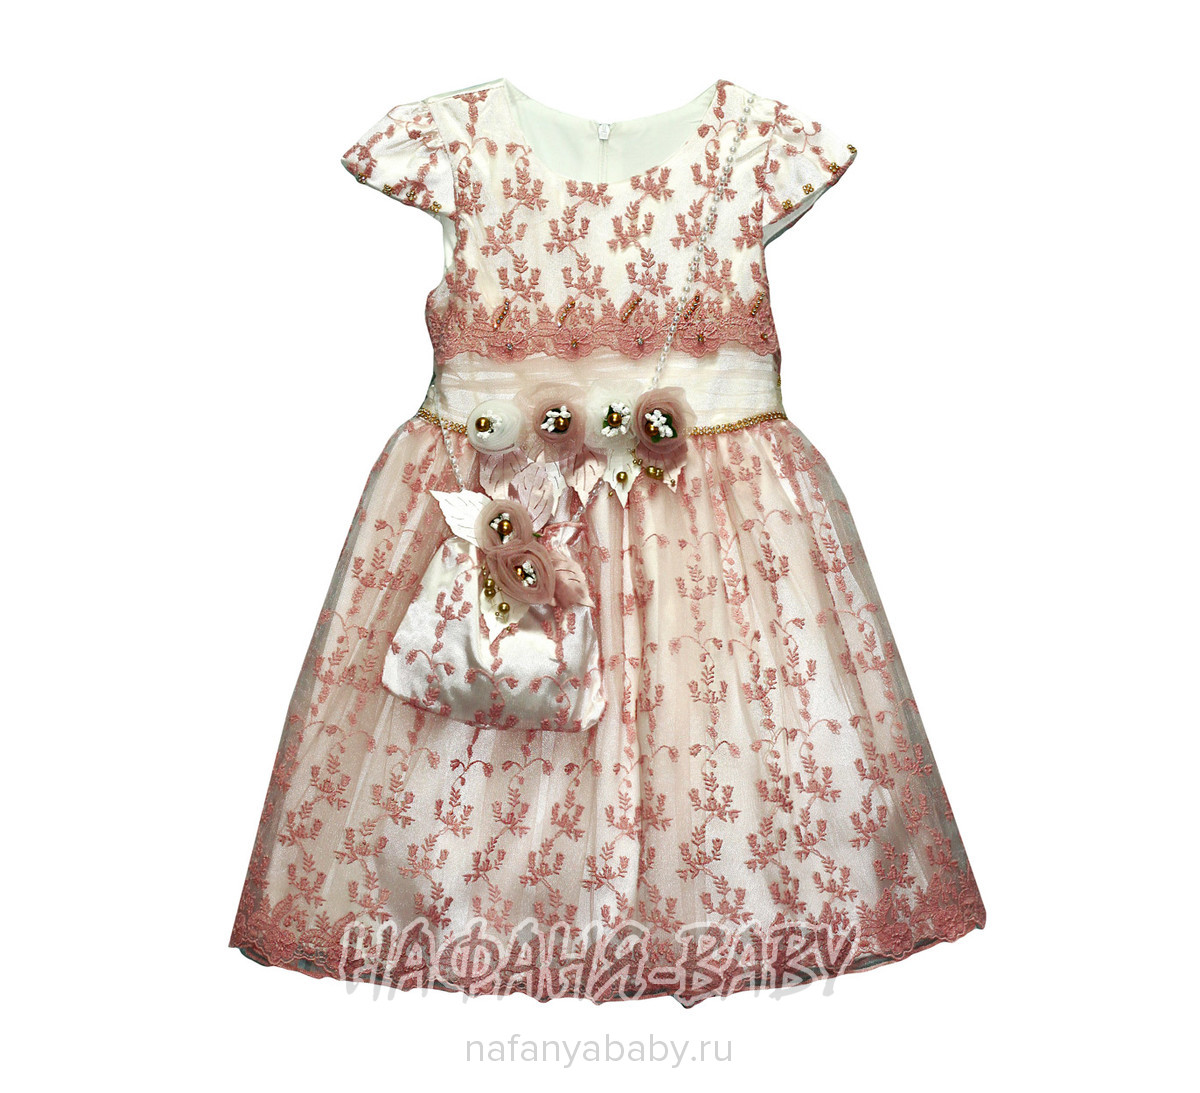 Детское платье MISS MARINE, купить в интернет магазине Нафаня. арт: 0564.